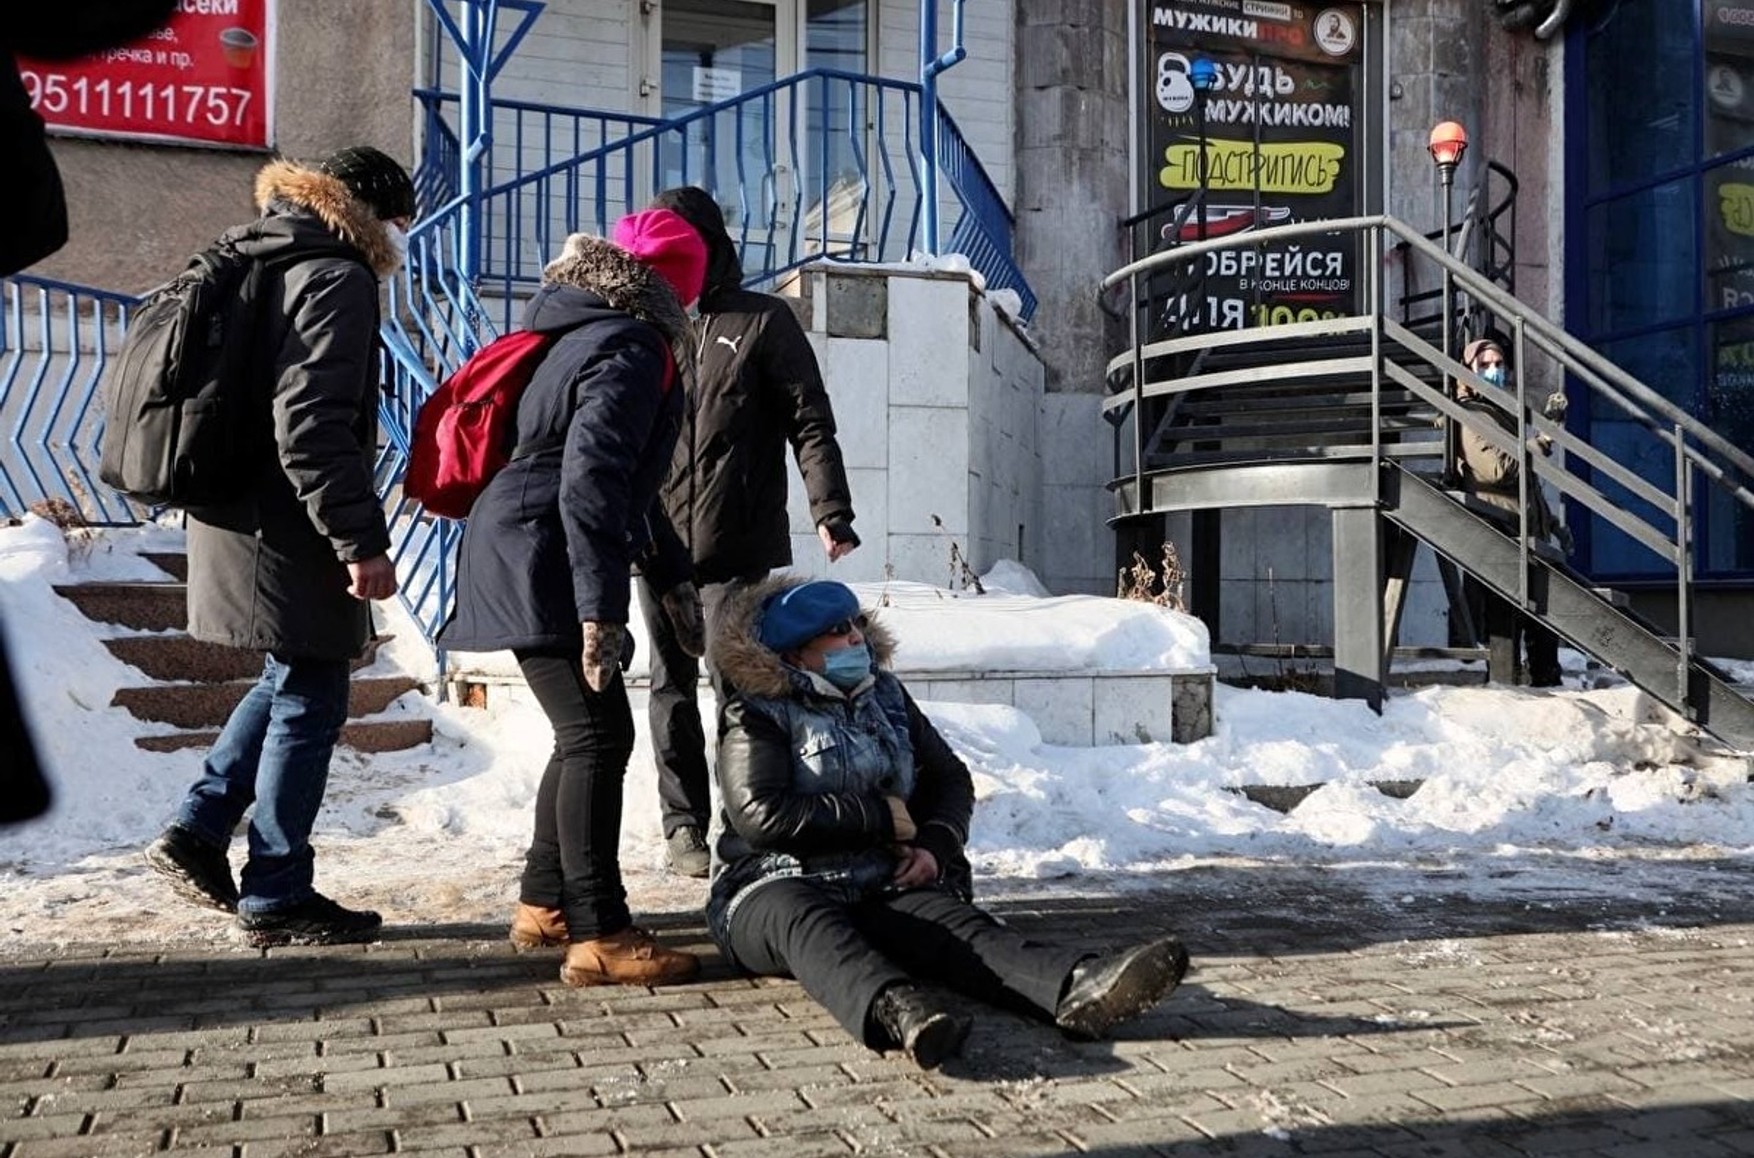 СК в Челябінську відмовився проводити перевірку щодо поліцейського, яка штовхнула пенсіонерку на мітингу. Жінка отримала перелом руки